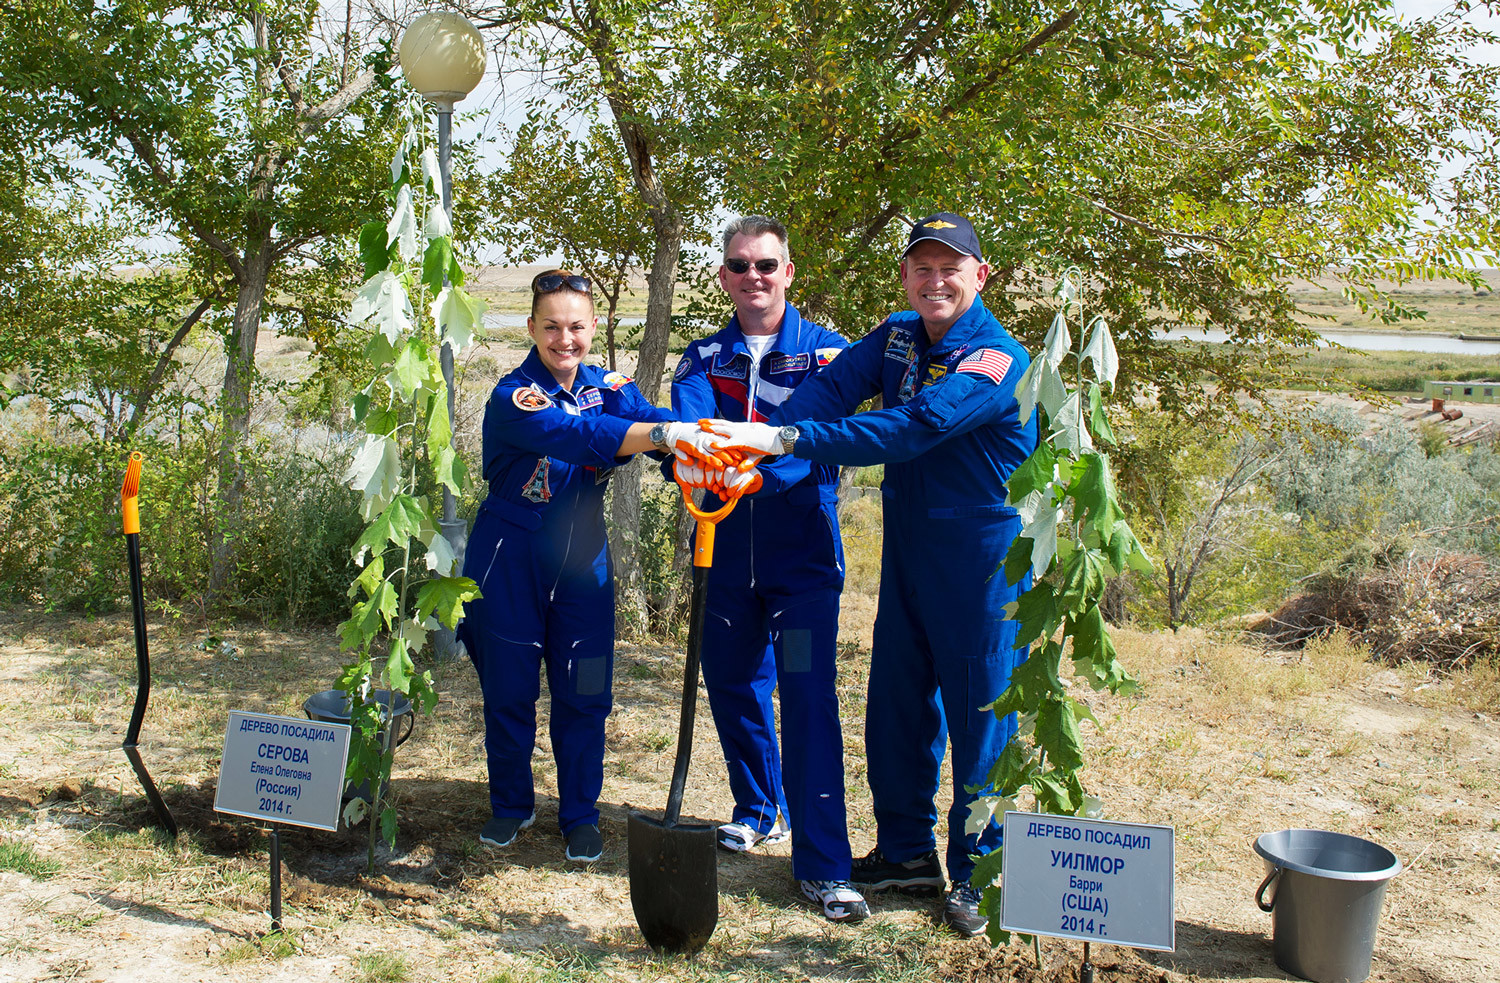 2014年9月17日。Soyuz TMA-14Mのクルー、ロスコスモスの宇宙飛行士アレクサンドル・サモクチャエフ（中央）、エレナ・セロワとNASAの宇宙飛行士、バリー・ウィルモアがバイコヌール宇宙基地で木を植える。